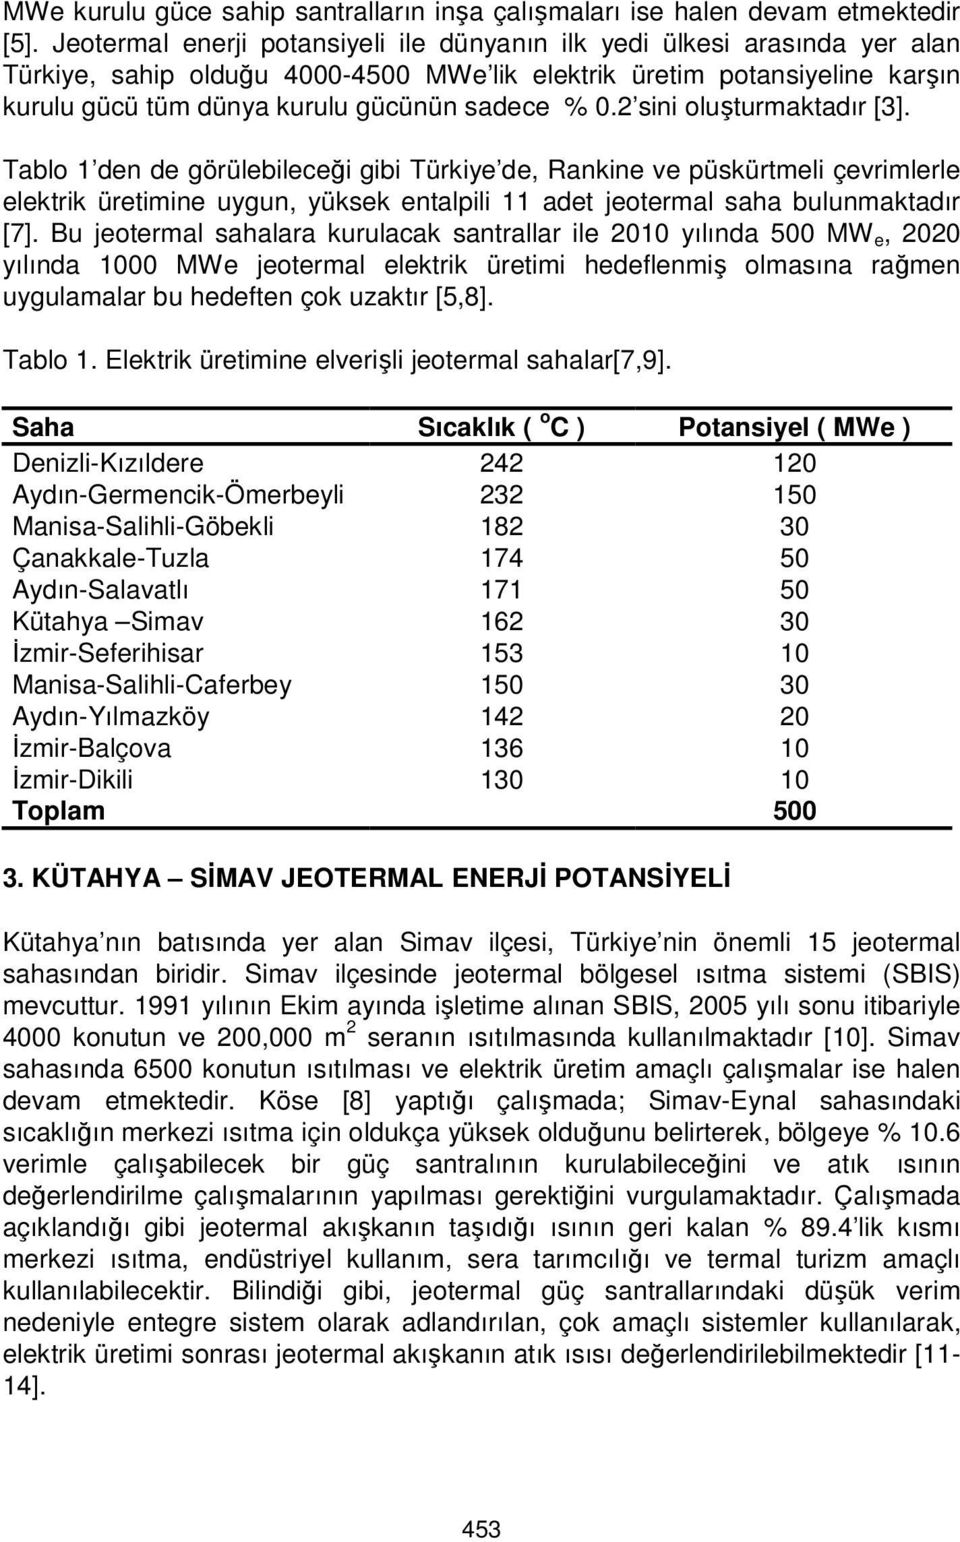 0.2 sini oluşturmaktadır [3]. Tablo 1 den de görülebileceği gibi Türkiye de, Rankine ve püskürtmeli çevrimlerle elektrik üretimine uygun, yüksek entalpili 11 adet jeotermal saha bulunmaktadır [7].